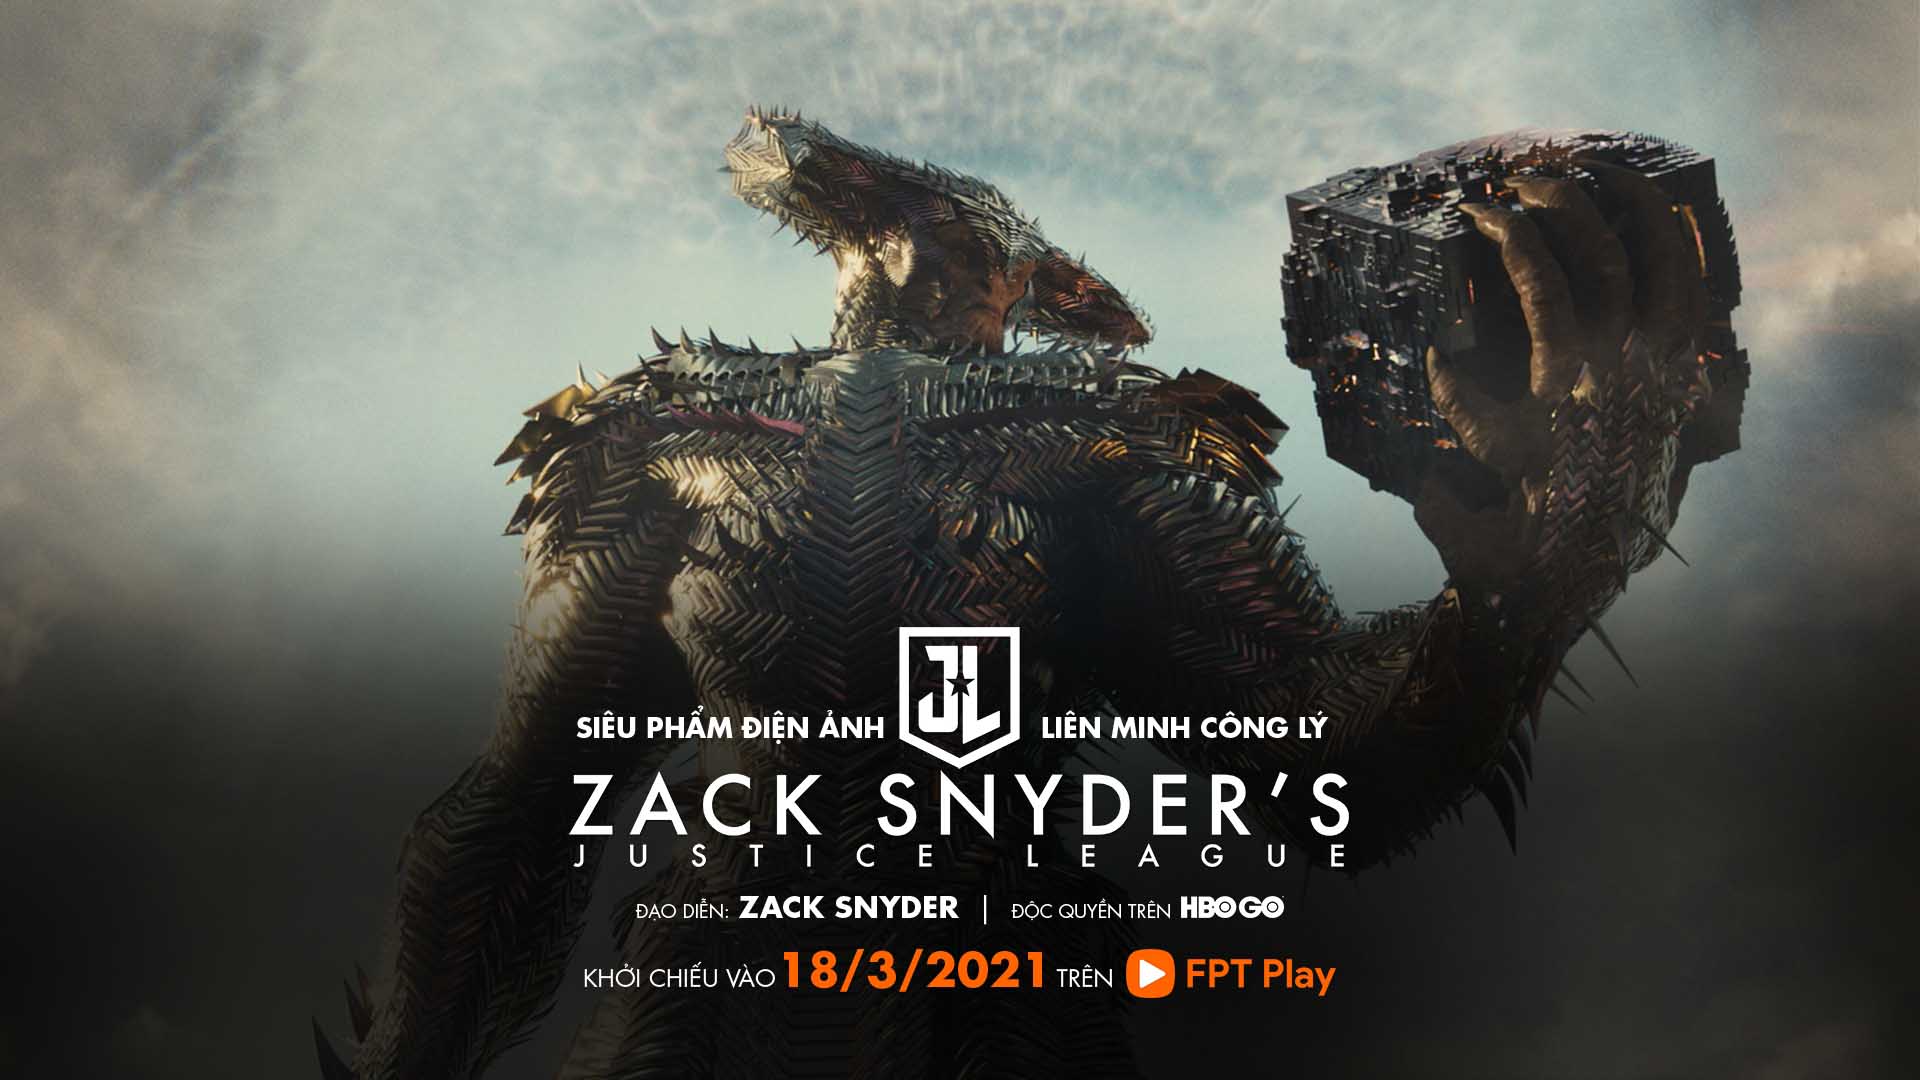 Liên Minh Công Lý của Zack Snyder công chiếu trực tuyến độc quyền HBO GO trên FPT Play